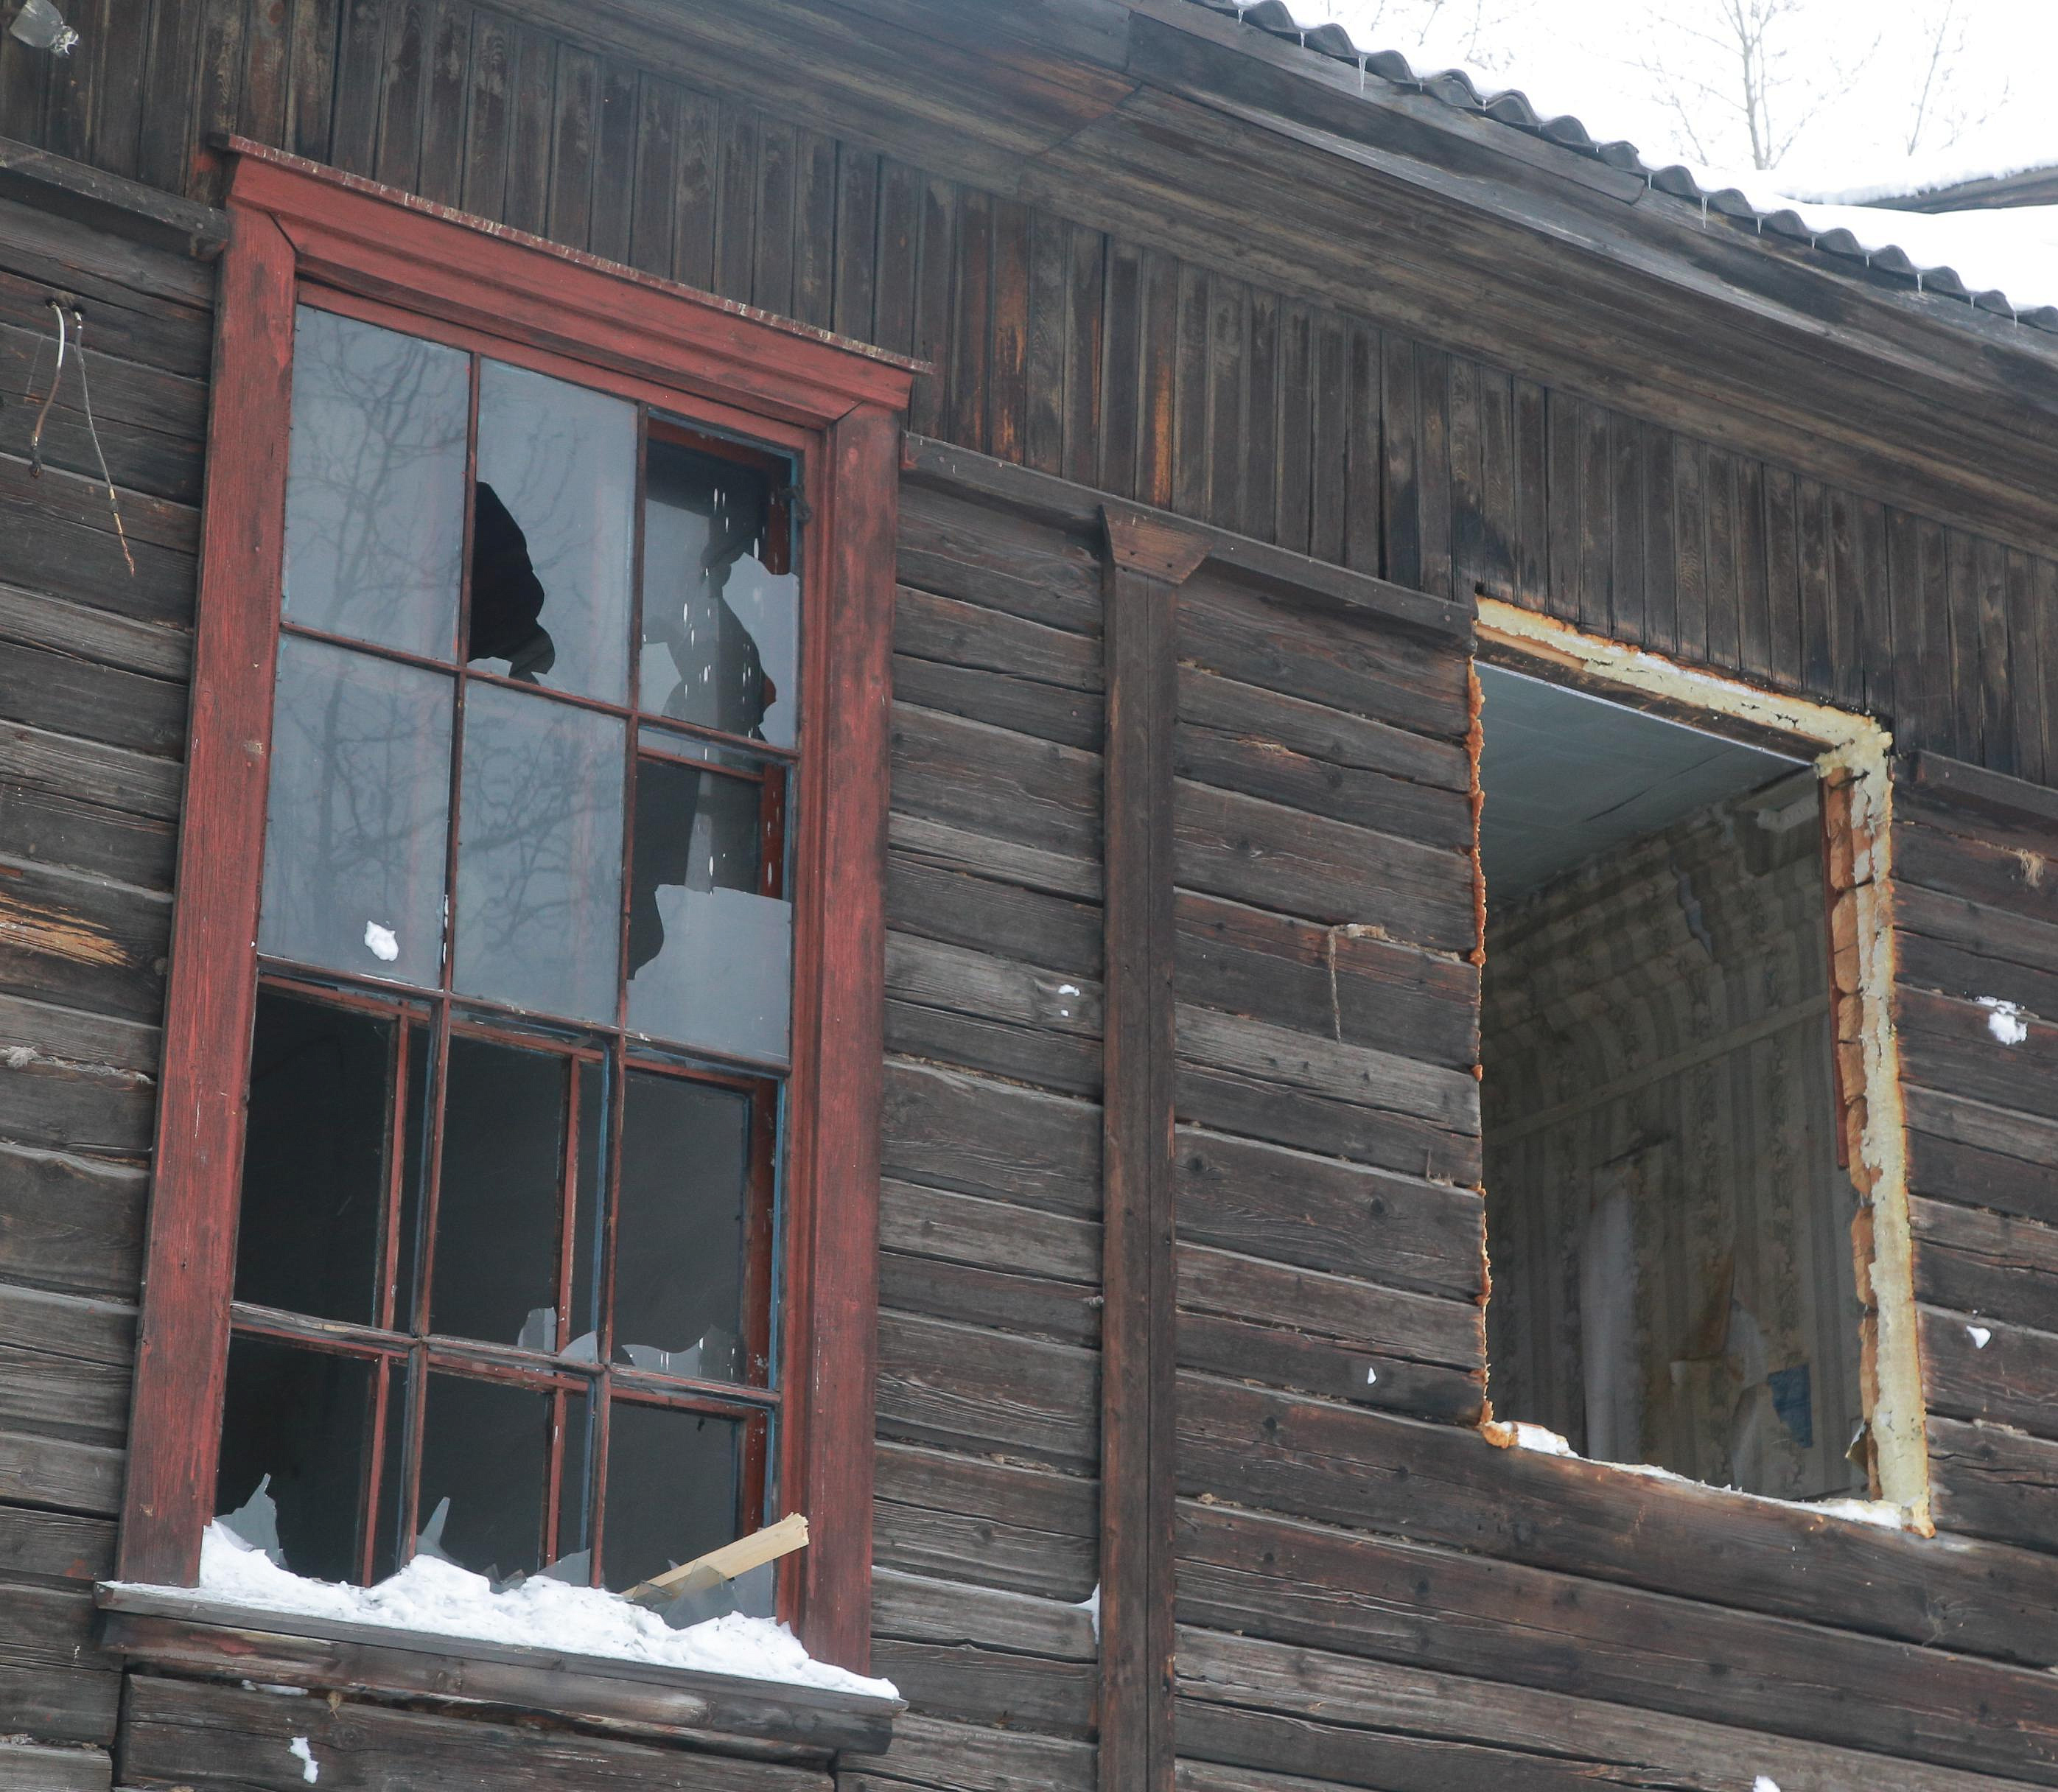 2,5 млрд направят на расселение ветхих домов в Новосибирской области